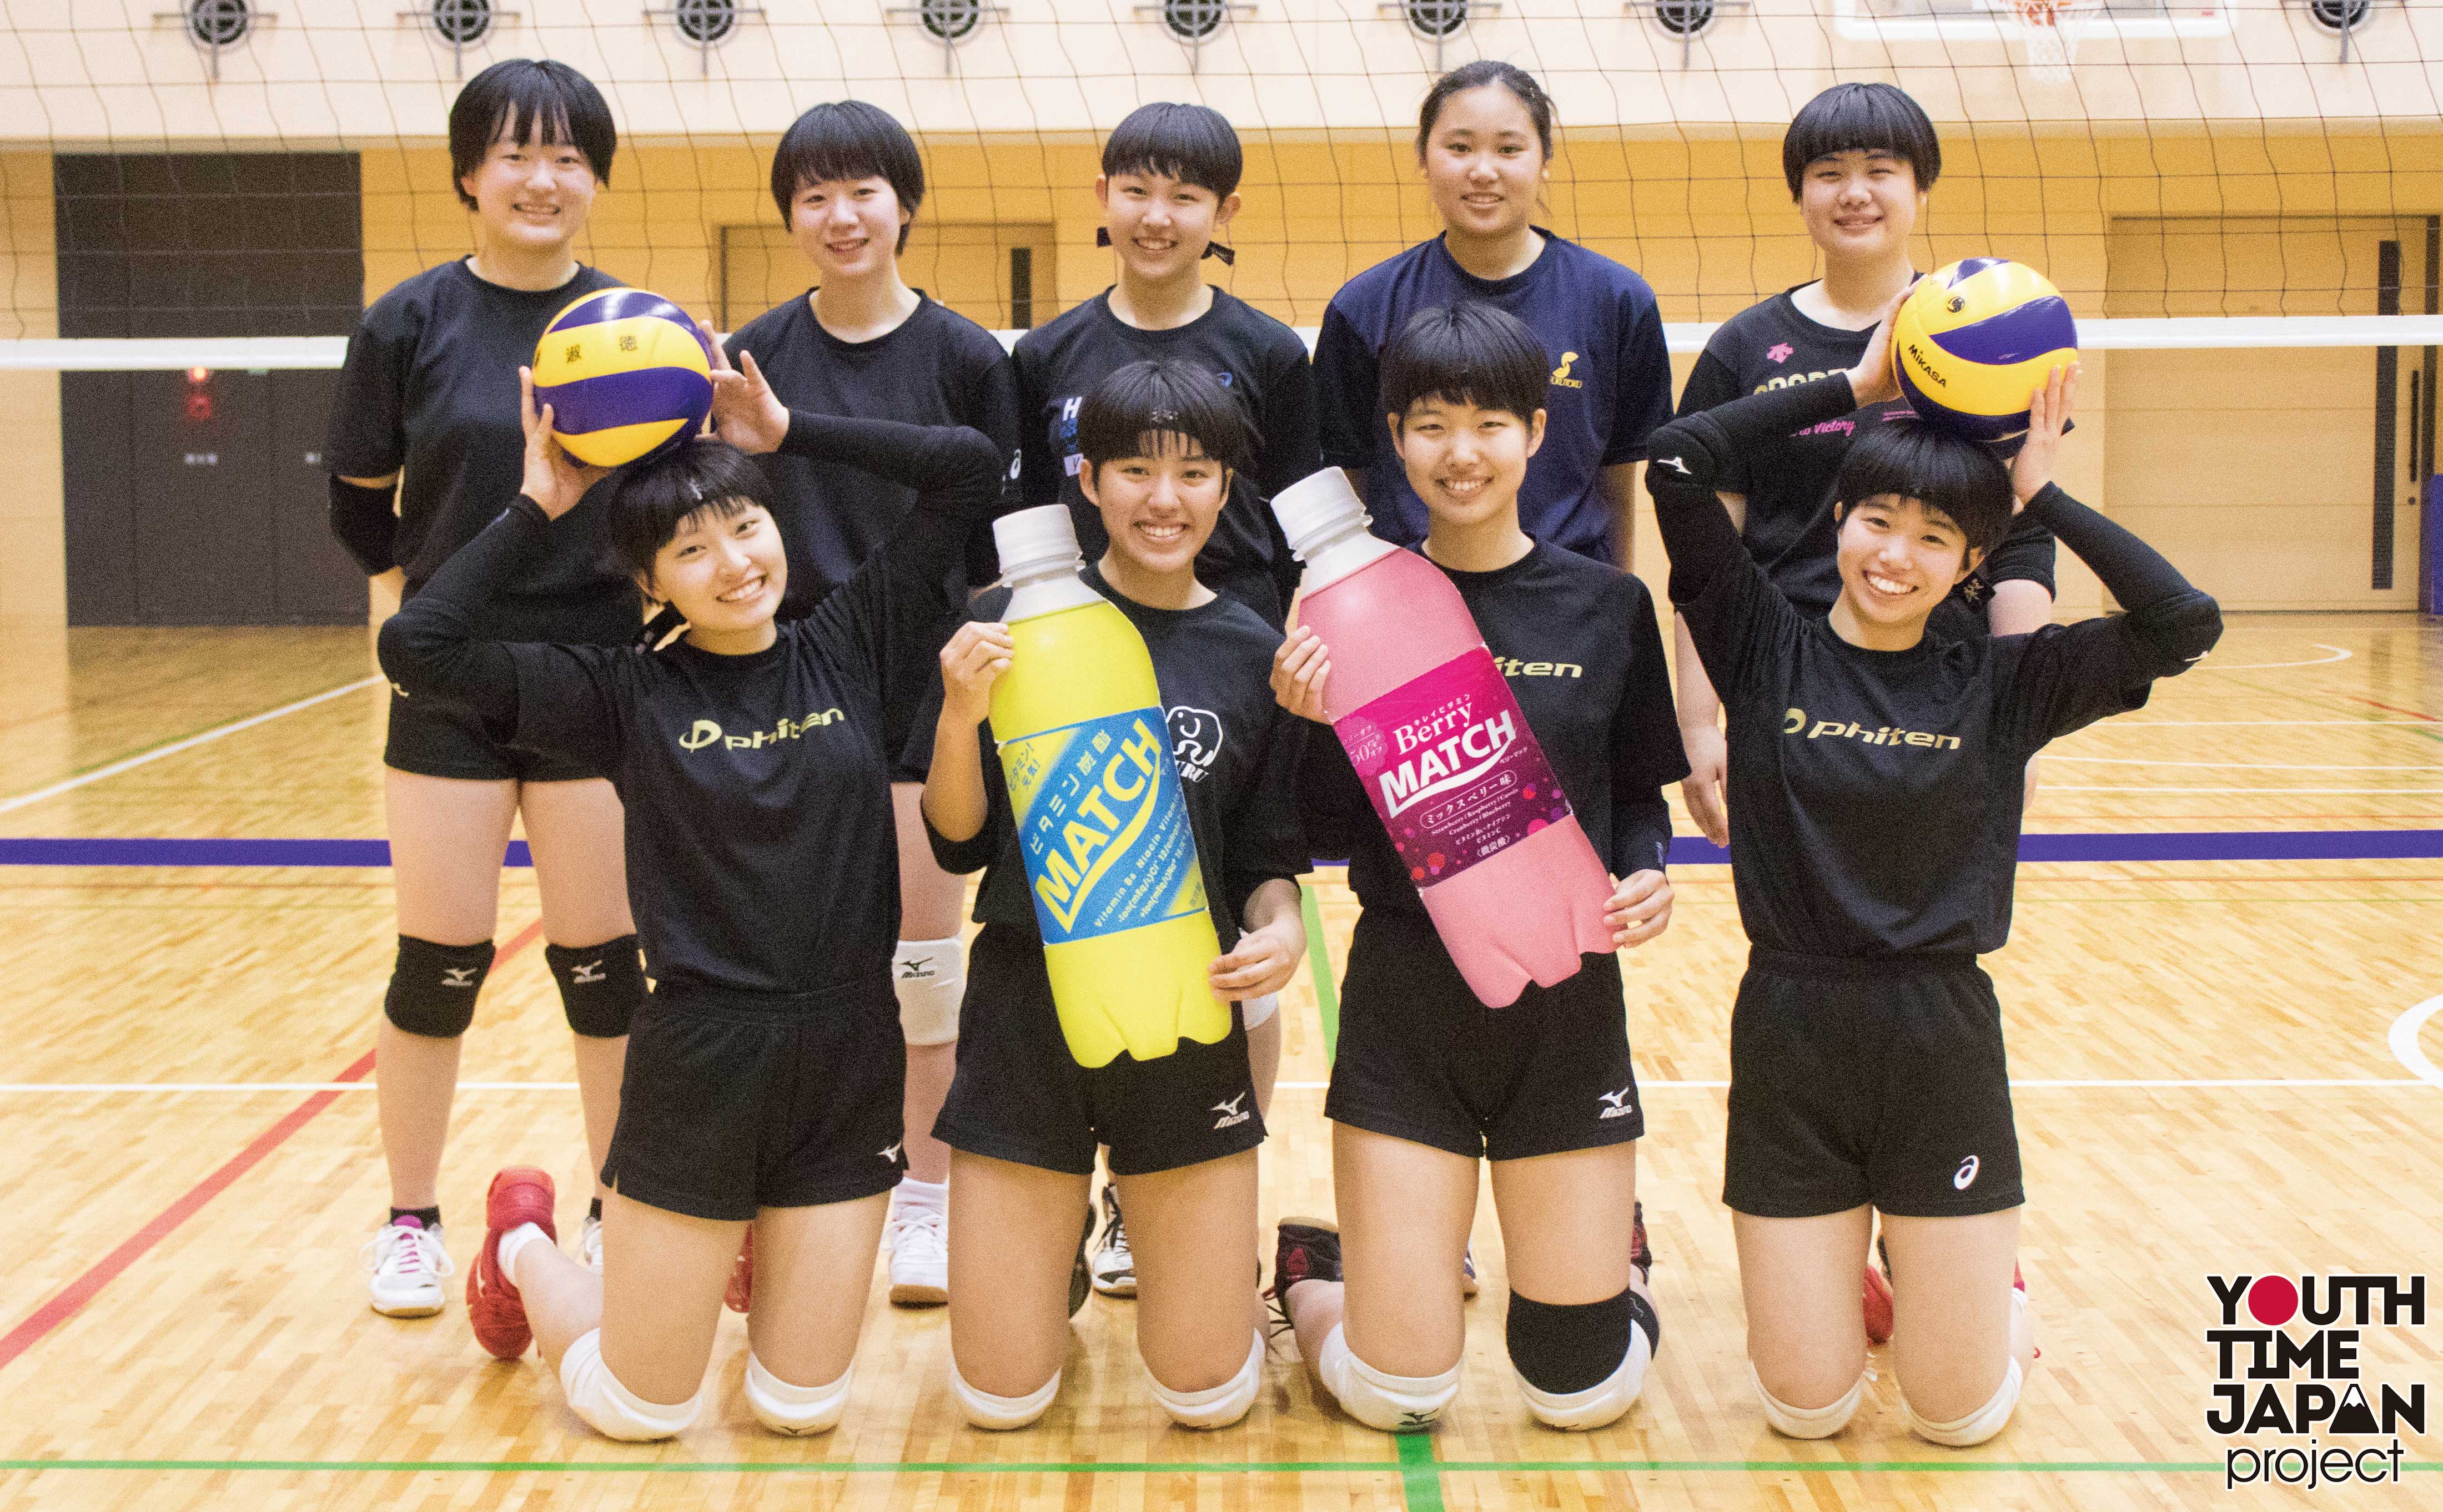 淑徳高等学校 東京都 女子バレー部 Bukatsu魂 Supported By Match Season8 Youth Time Japan Project Web